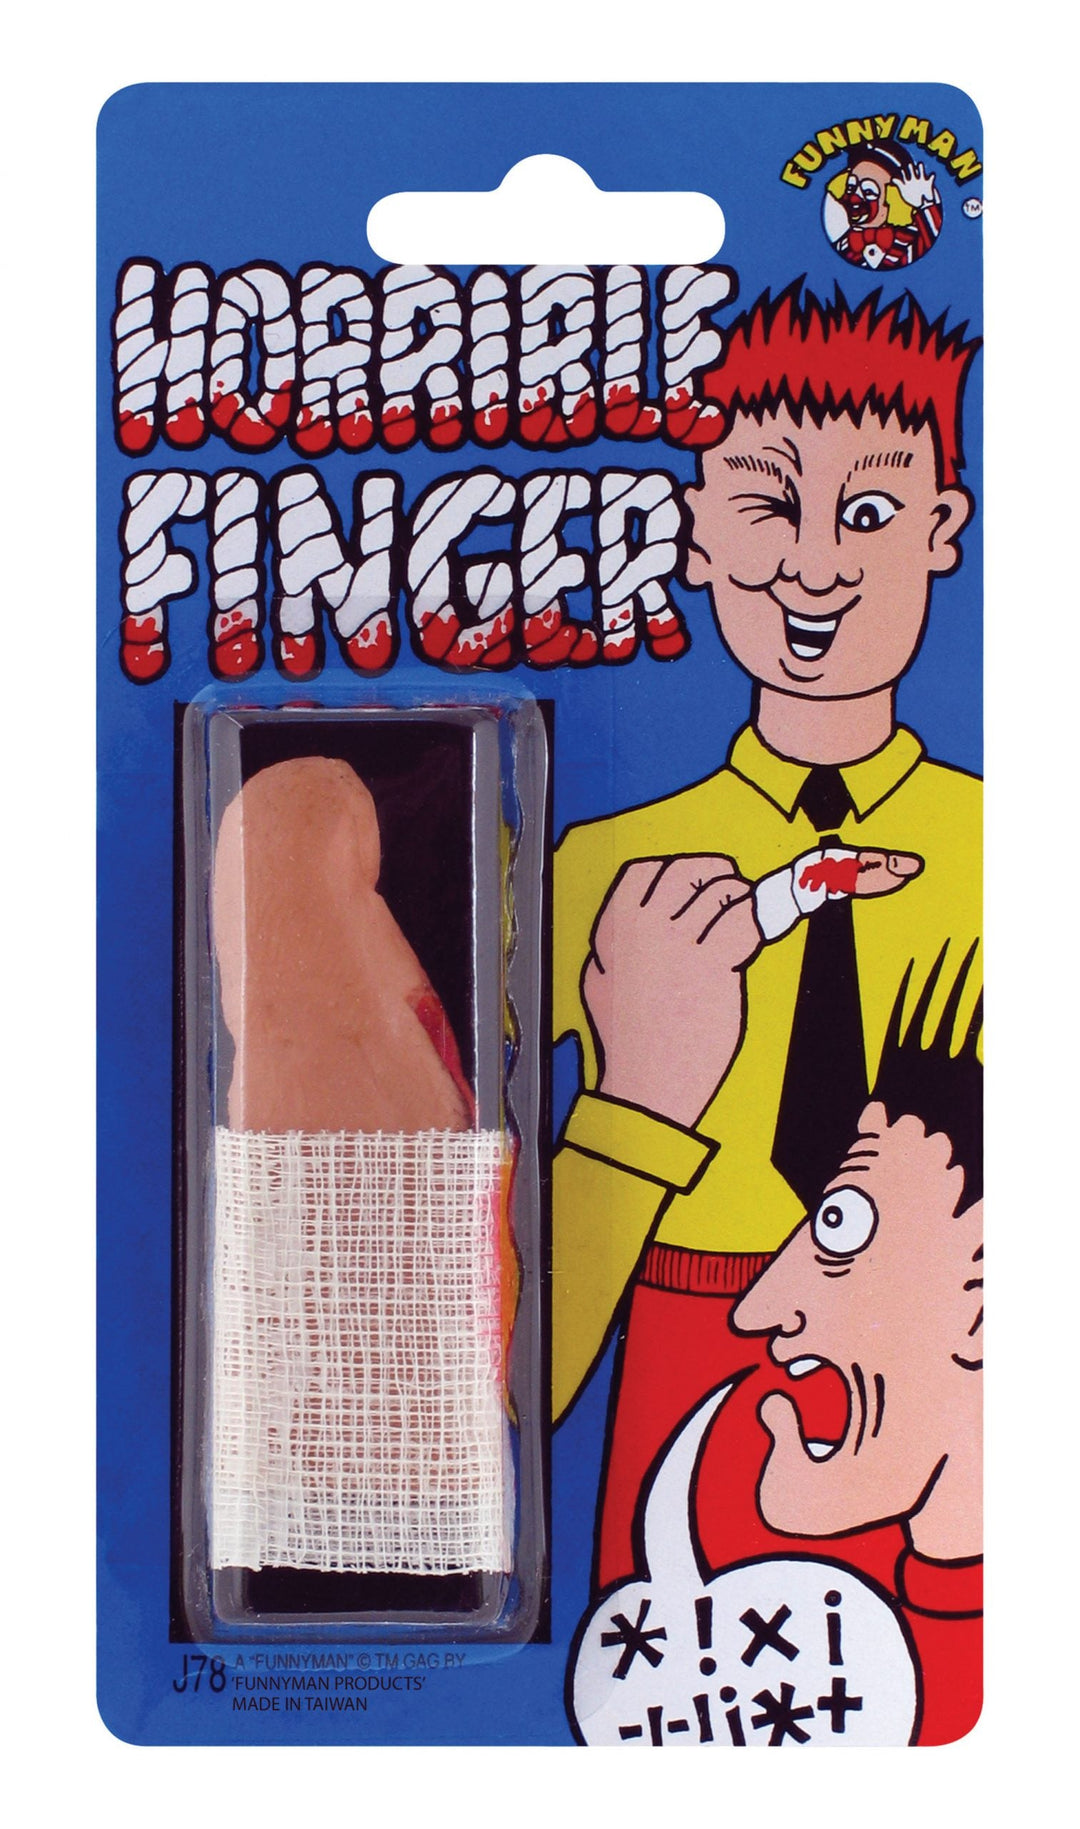 Horrible Bloody Finger_1